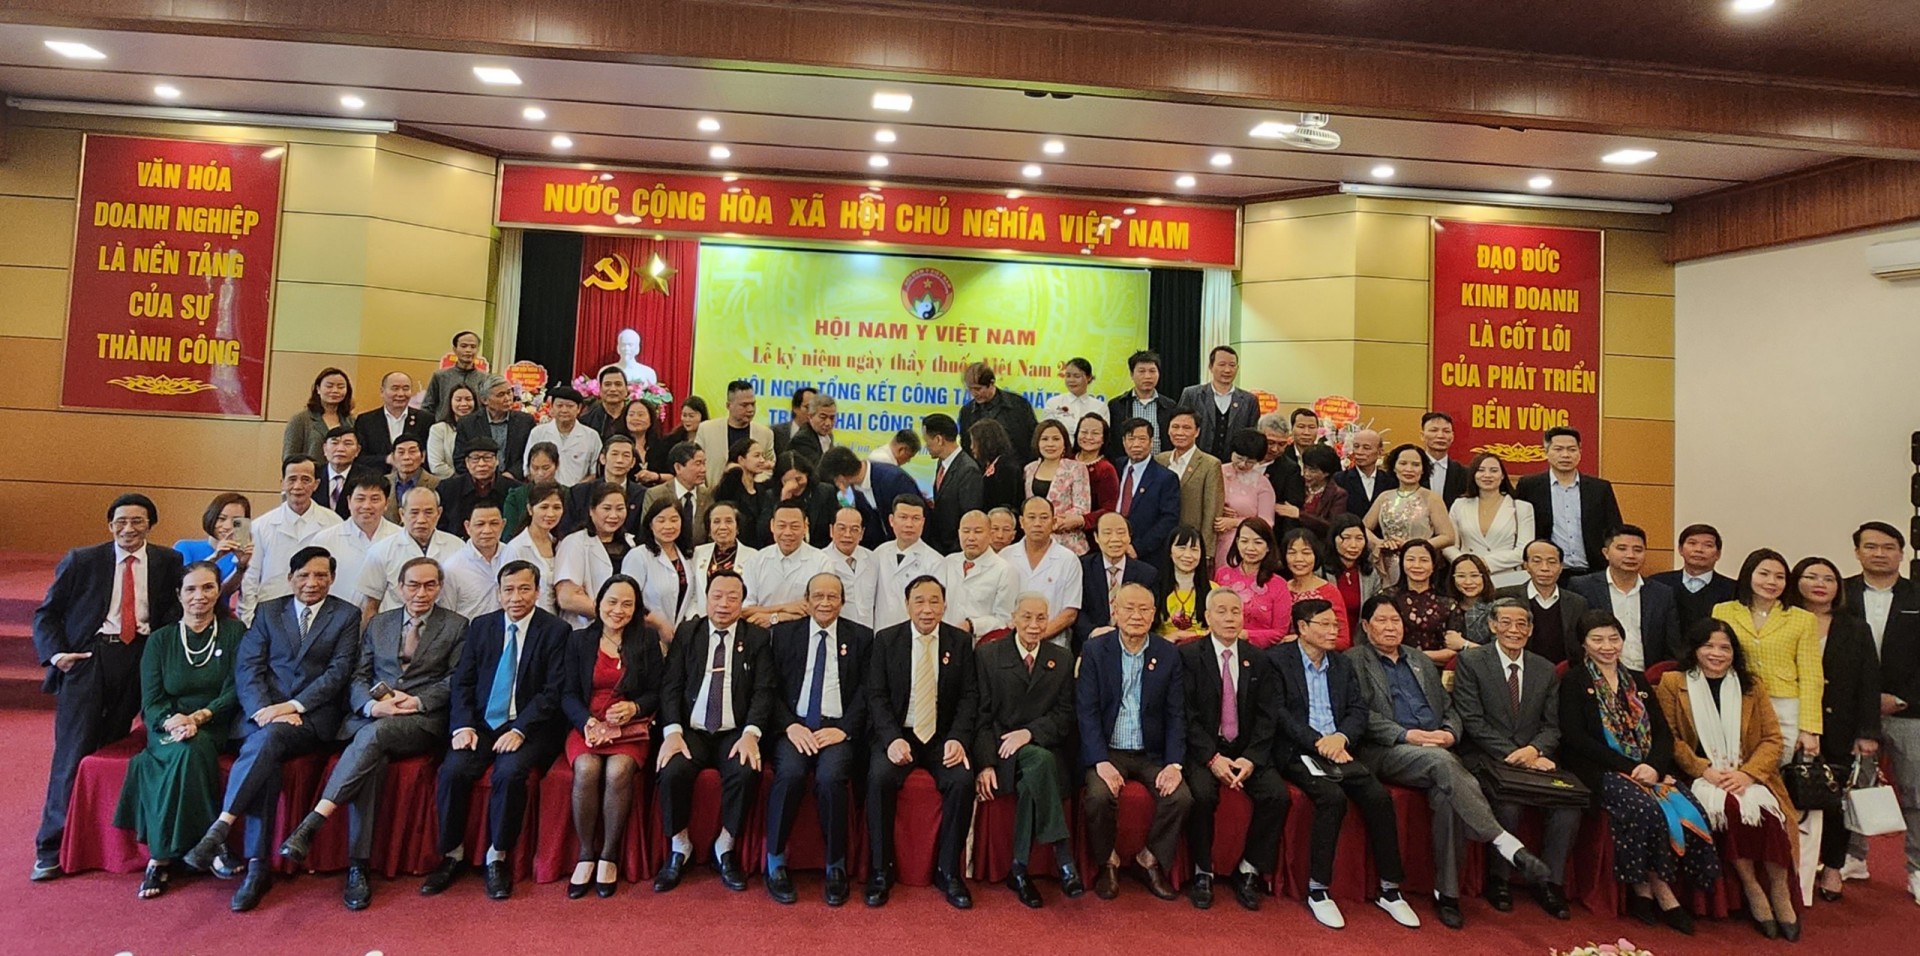 Hội Nam y Việt Nam: Hội nghị tổng kết công tác Hội năm 2022, triển khai công tác 2023